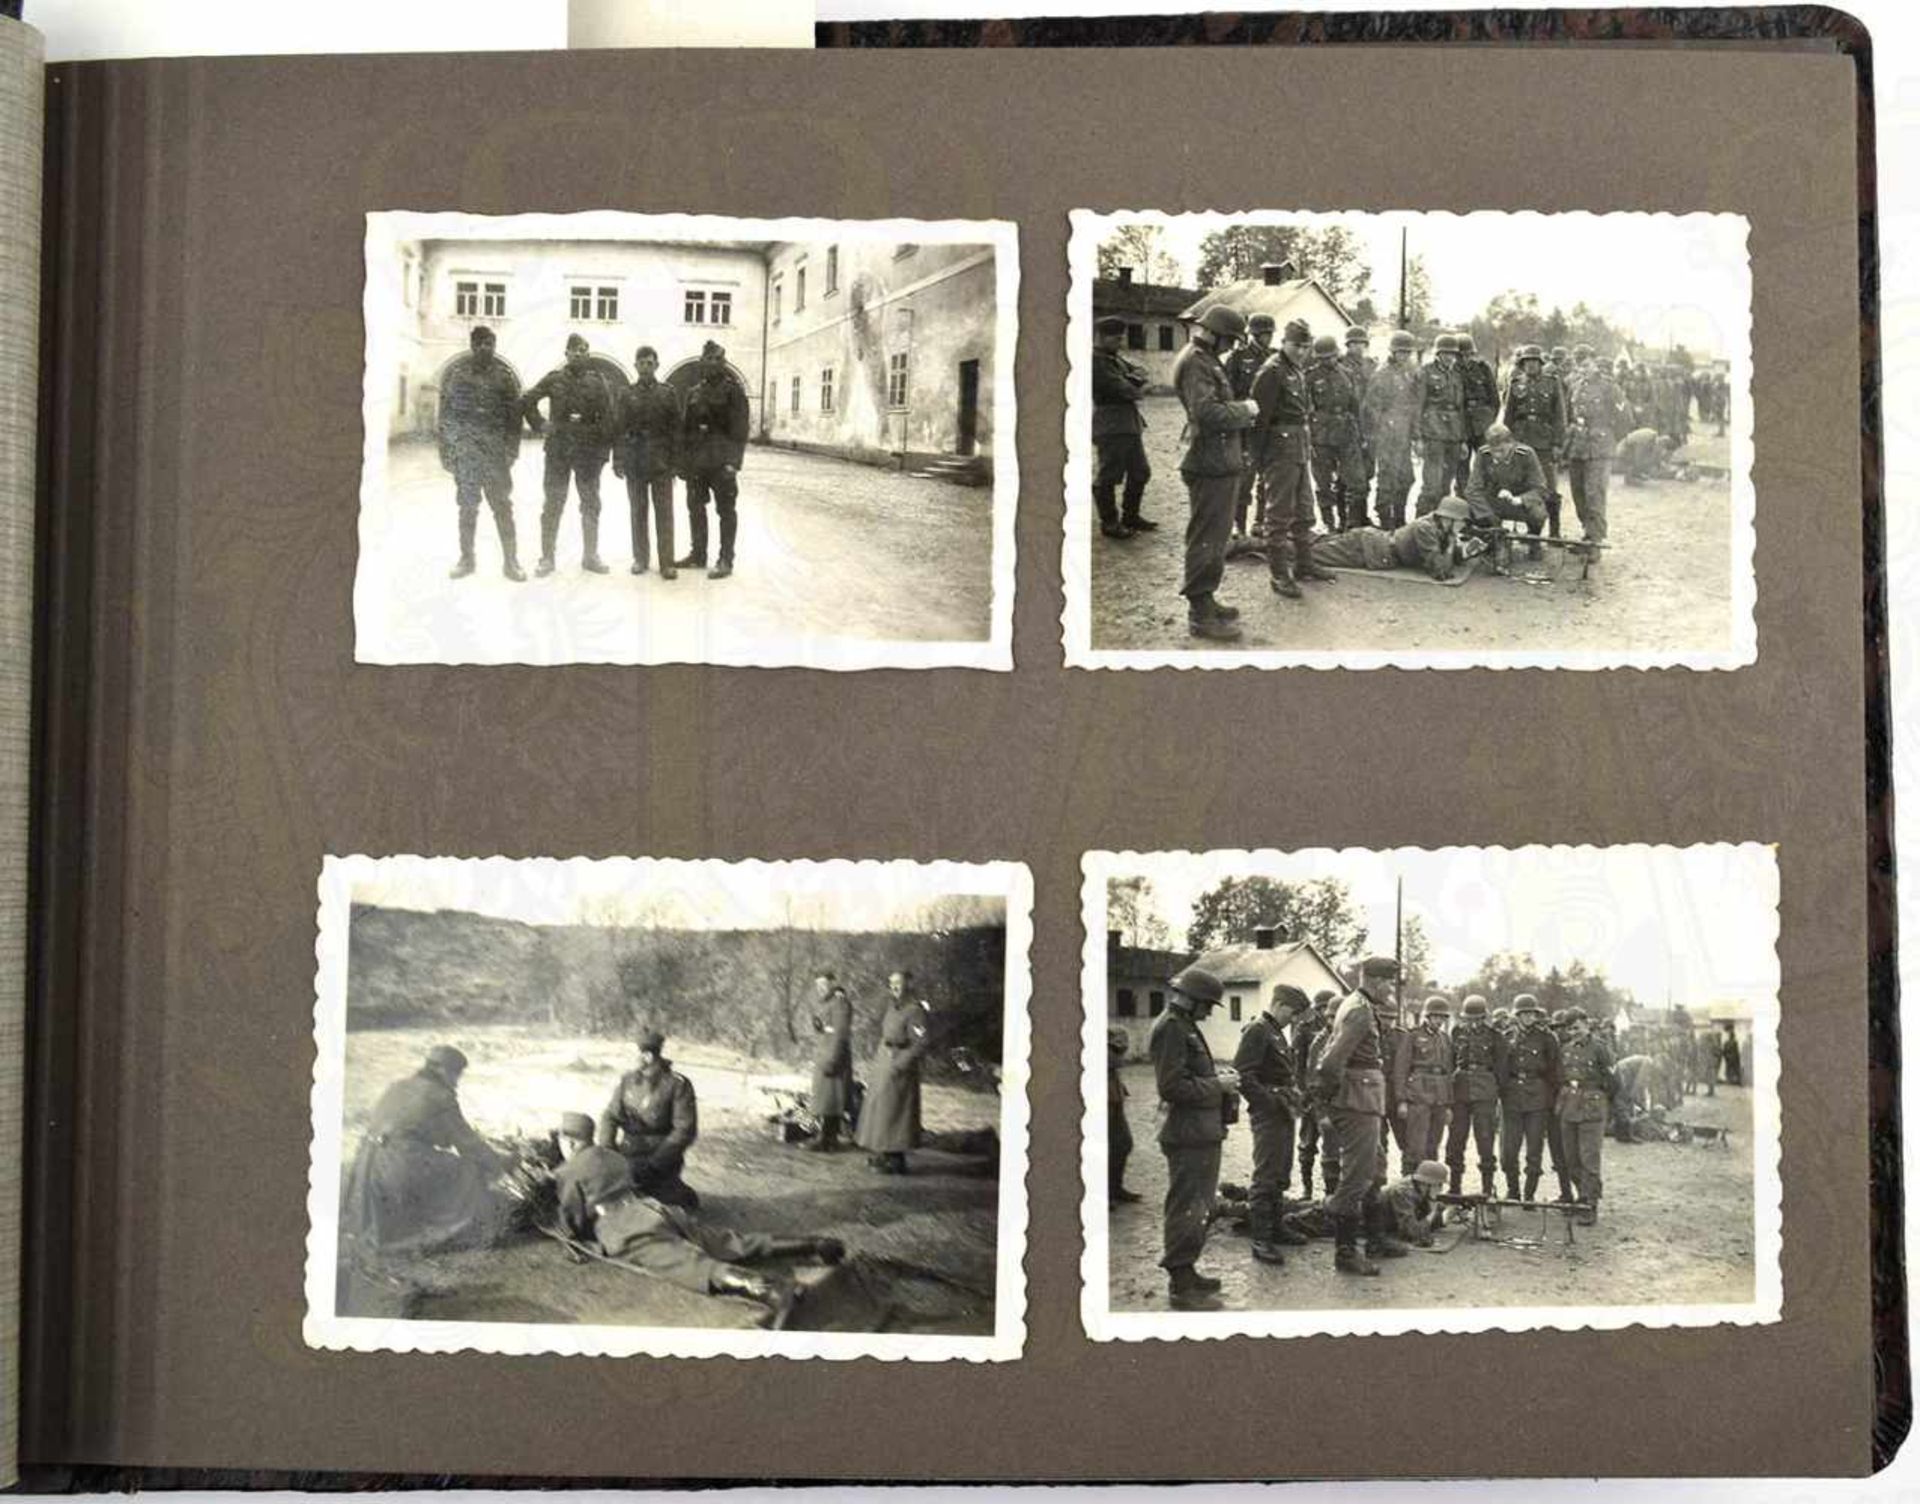 FOTOALBUM SCHÜTZEN-RGT. 10, 1939/1940, 118 Fotos u. 6 AK, Ausbildung, Sport, Schießübungen mit - Bild 2 aus 4